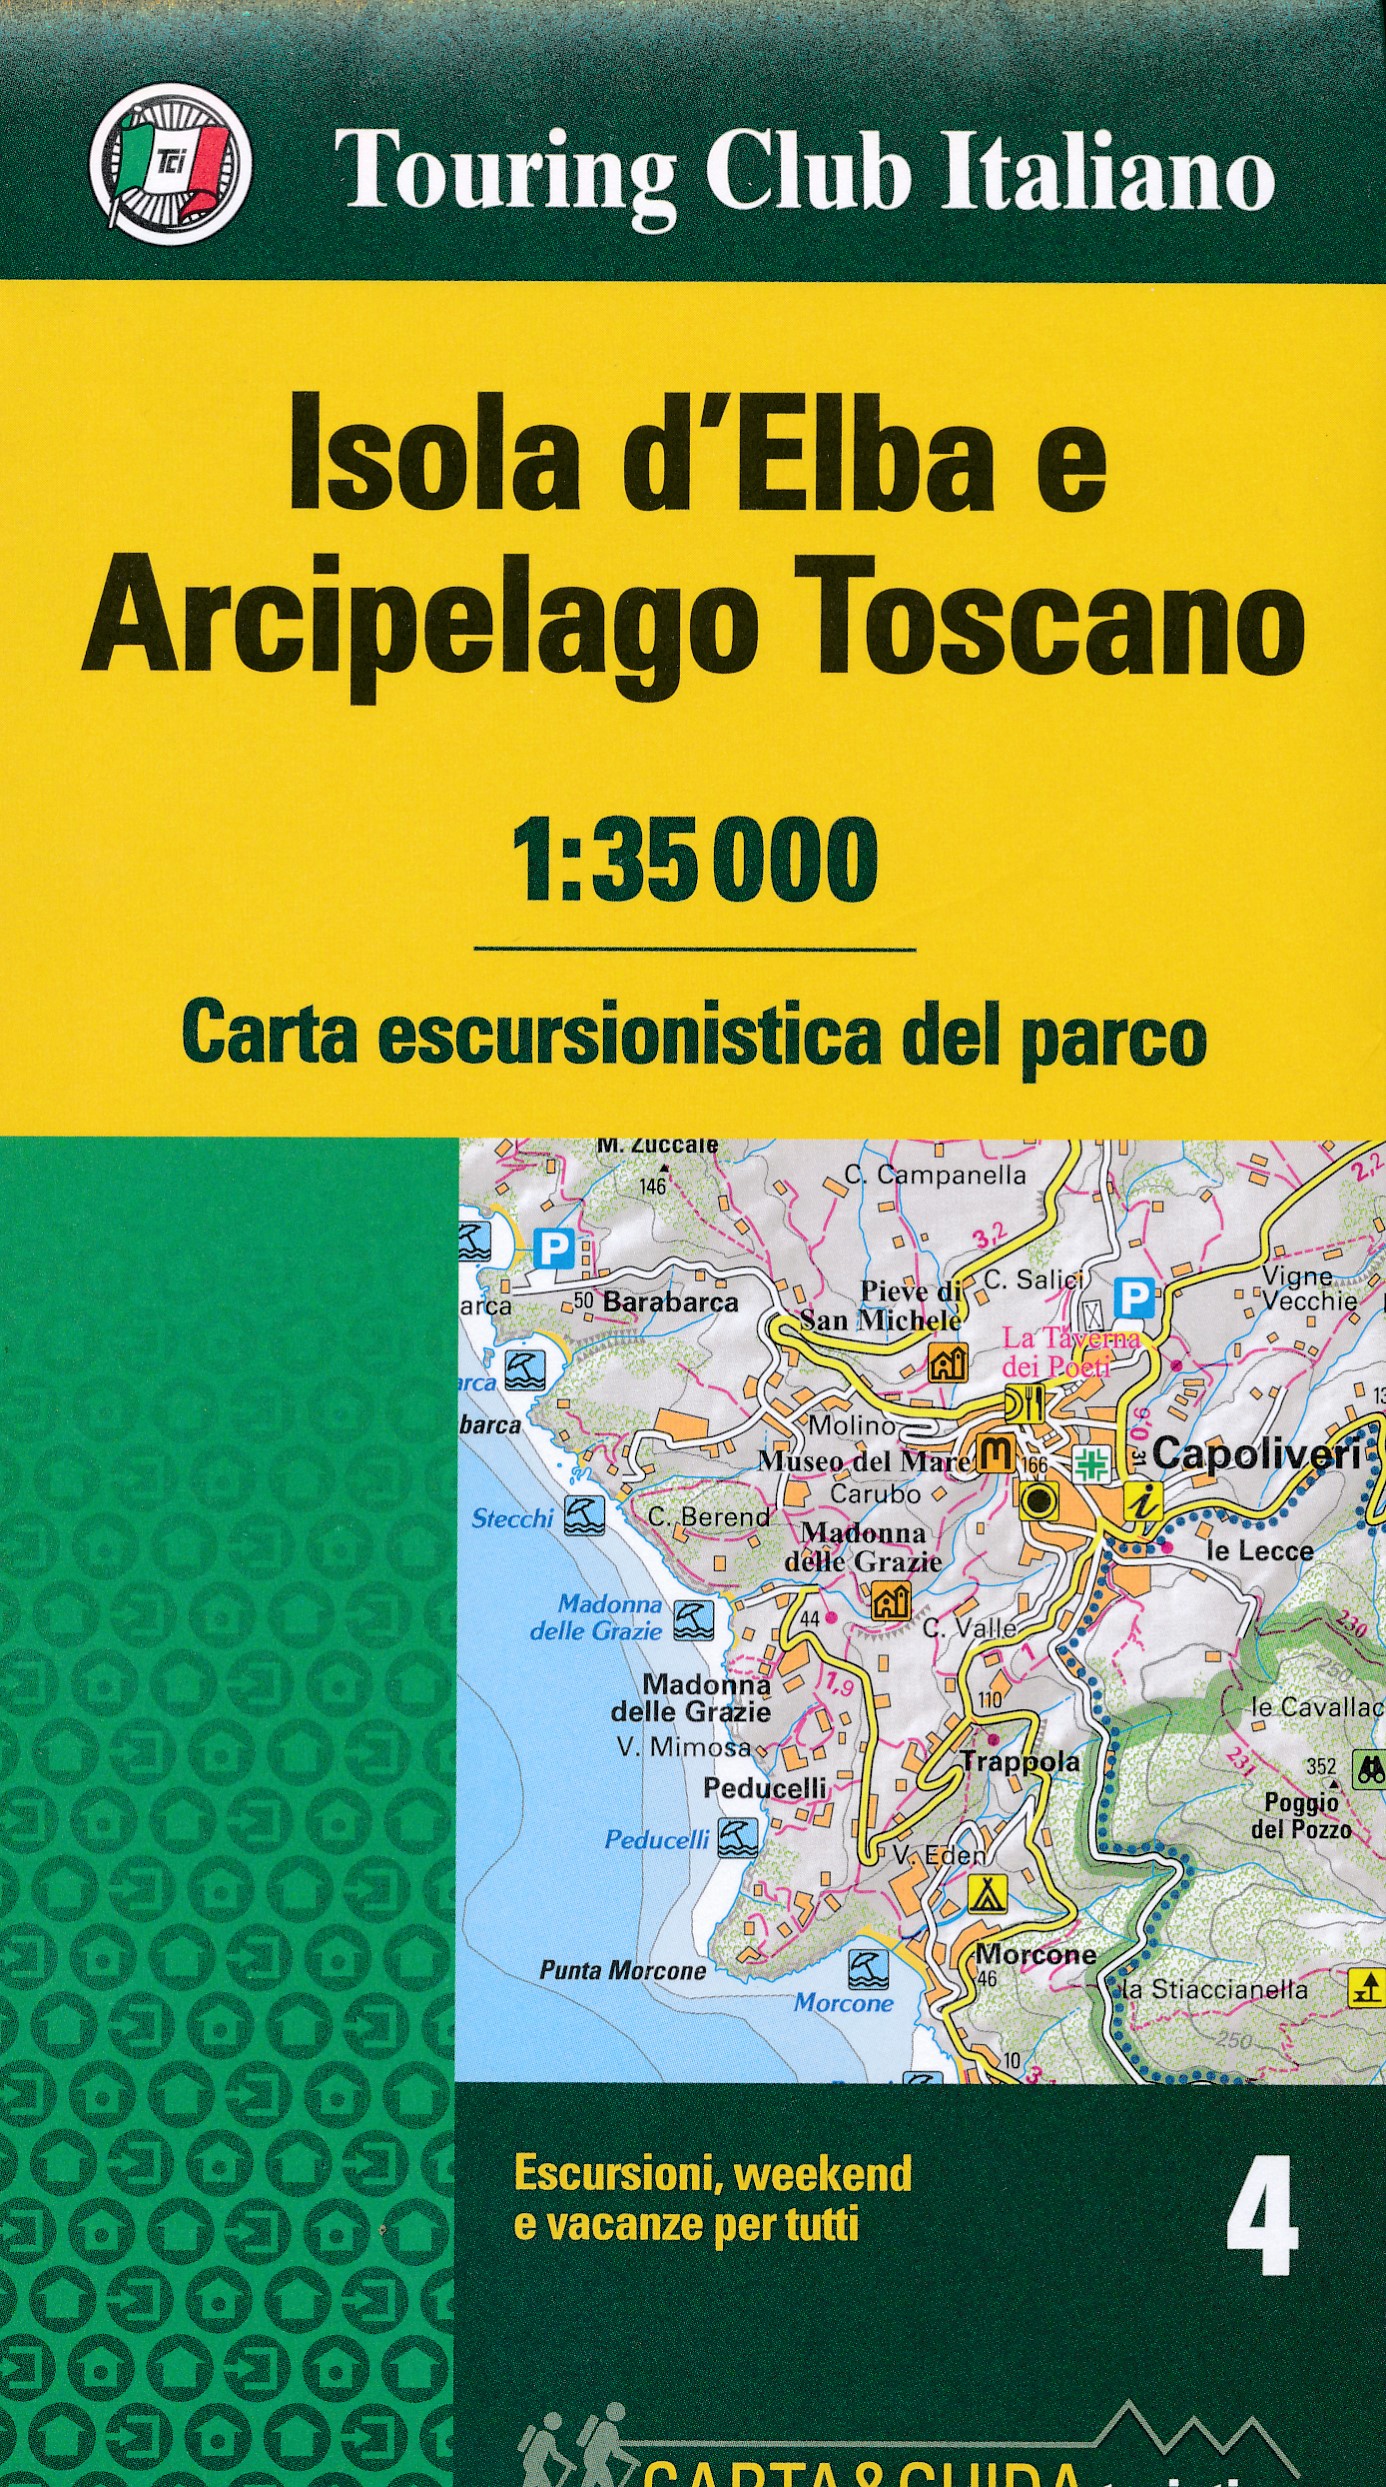 Online bestellen: Wandelkaart 4 Carta-guida Isola d'Elba - Archipelago Toscano | Touring Club Italiano